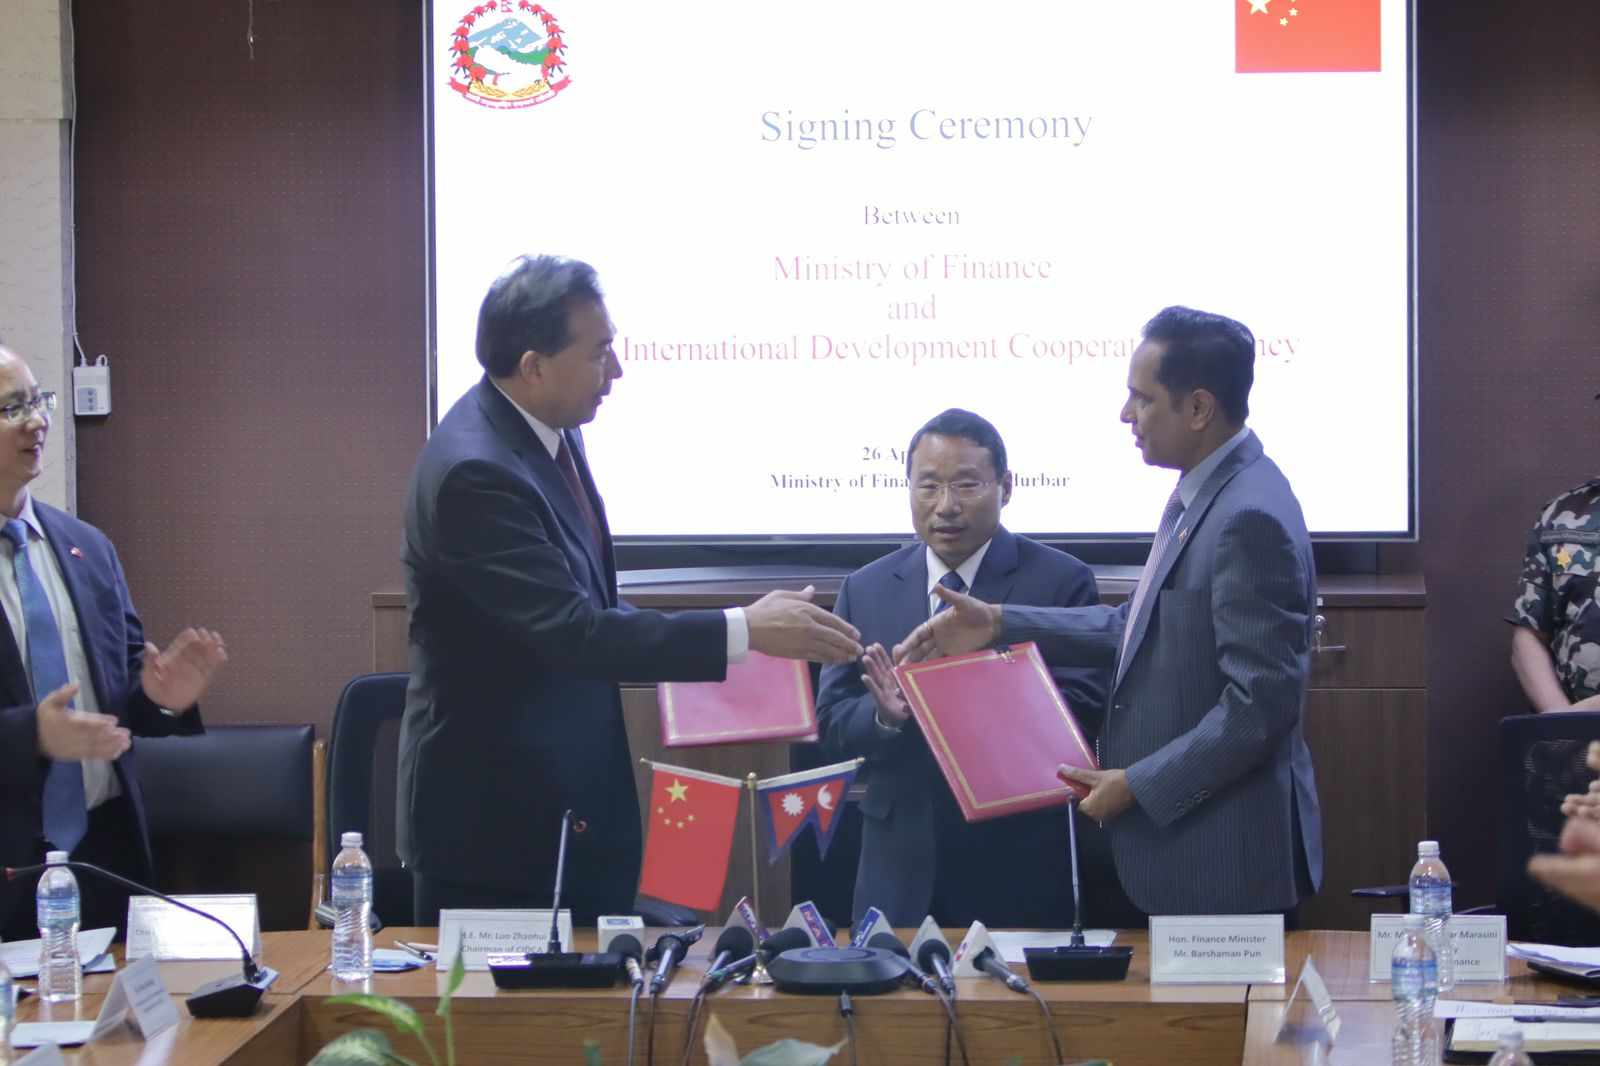 अर्थमन्त्री पुनको उपस्थितिमा नेपाल र चीनबीच दुई सम्झौतामा हस्ताक्षर